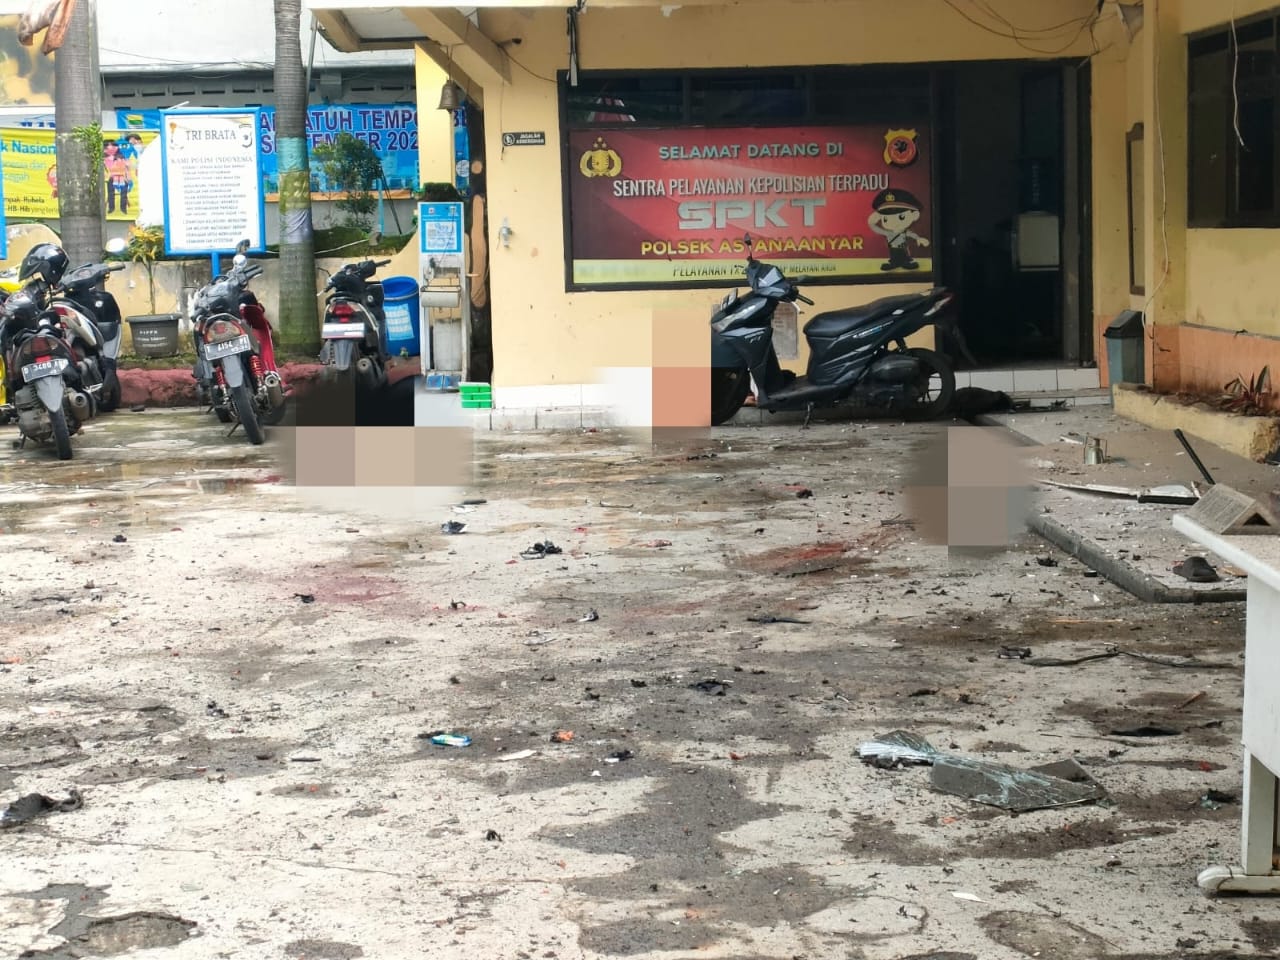 Bom Bunuh Diri Polsek Astanaanyar Bandung, Pelaku Masuk Saat Anggota Polisi Upacara